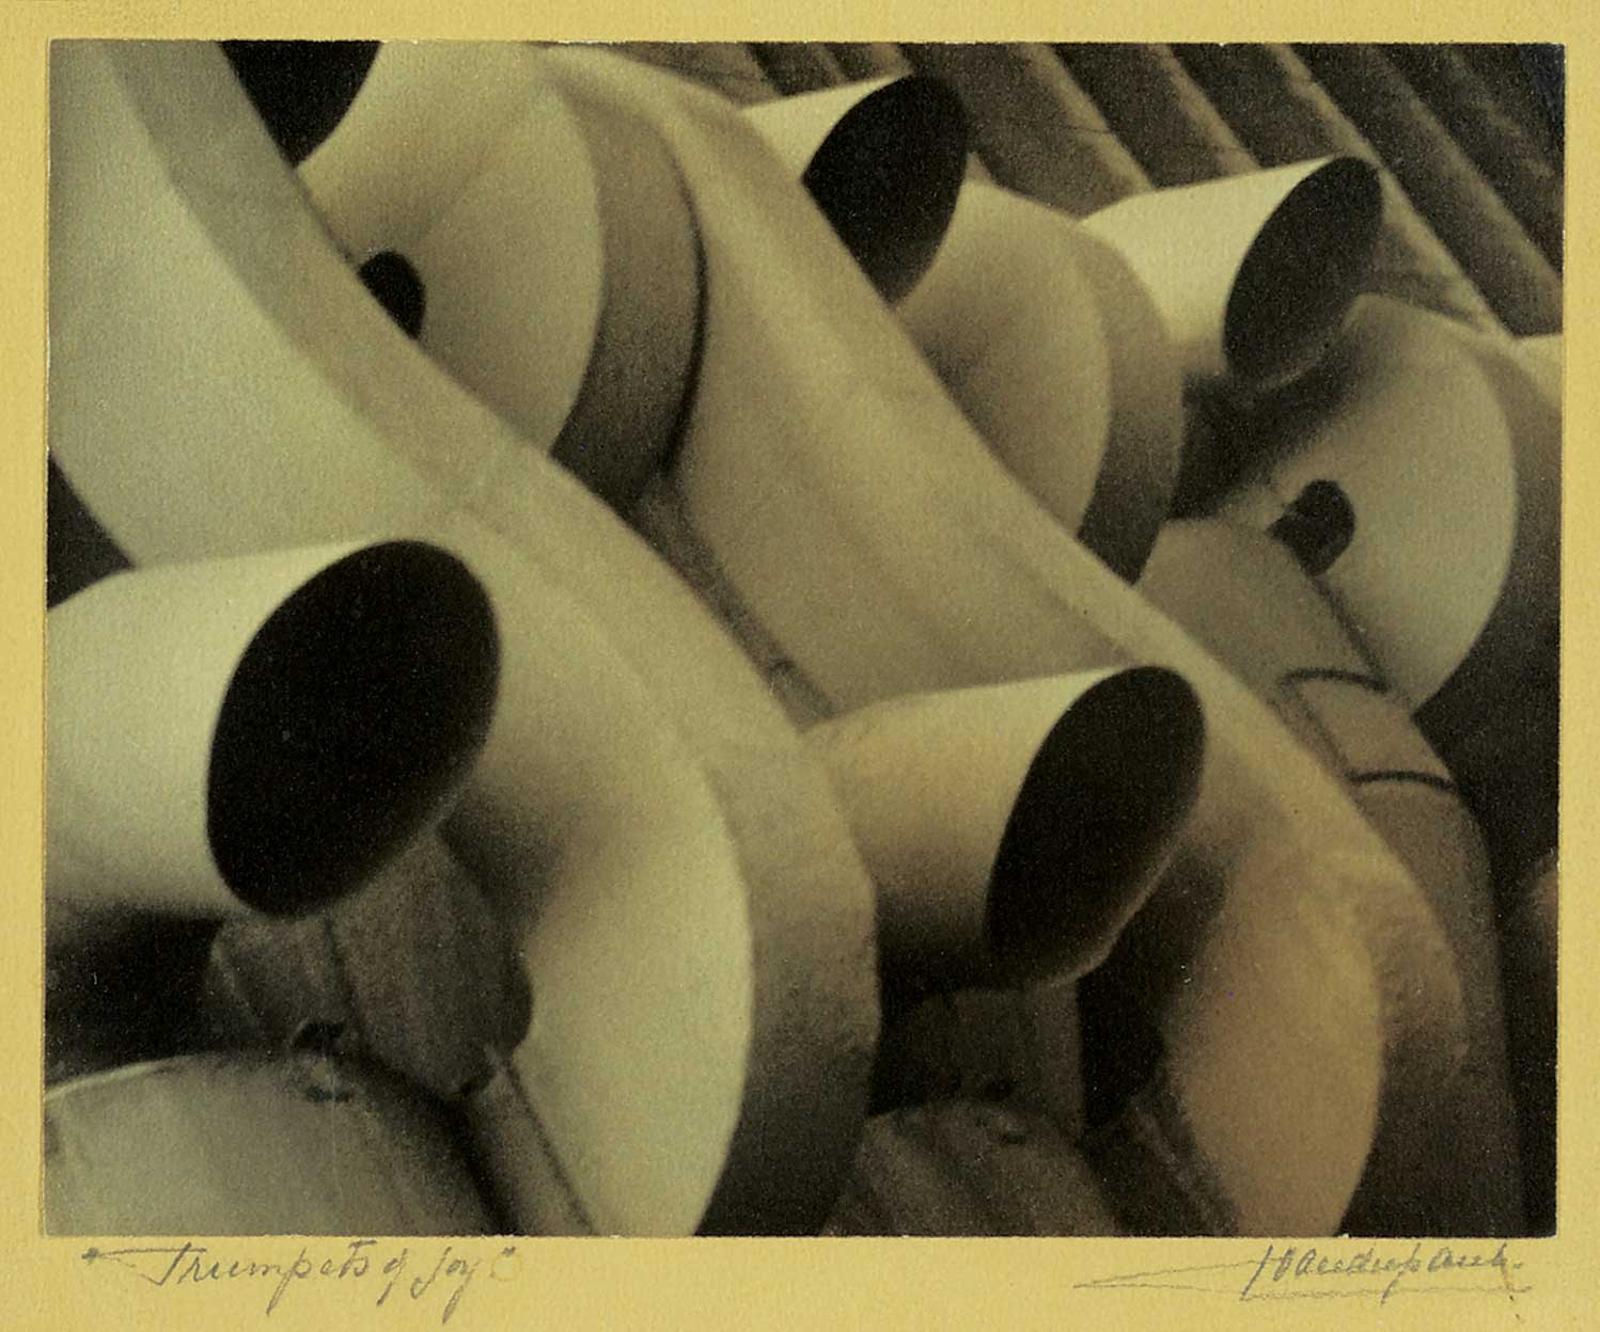 John A. Vanderpant (1884-1939) - Trumpets of Joy